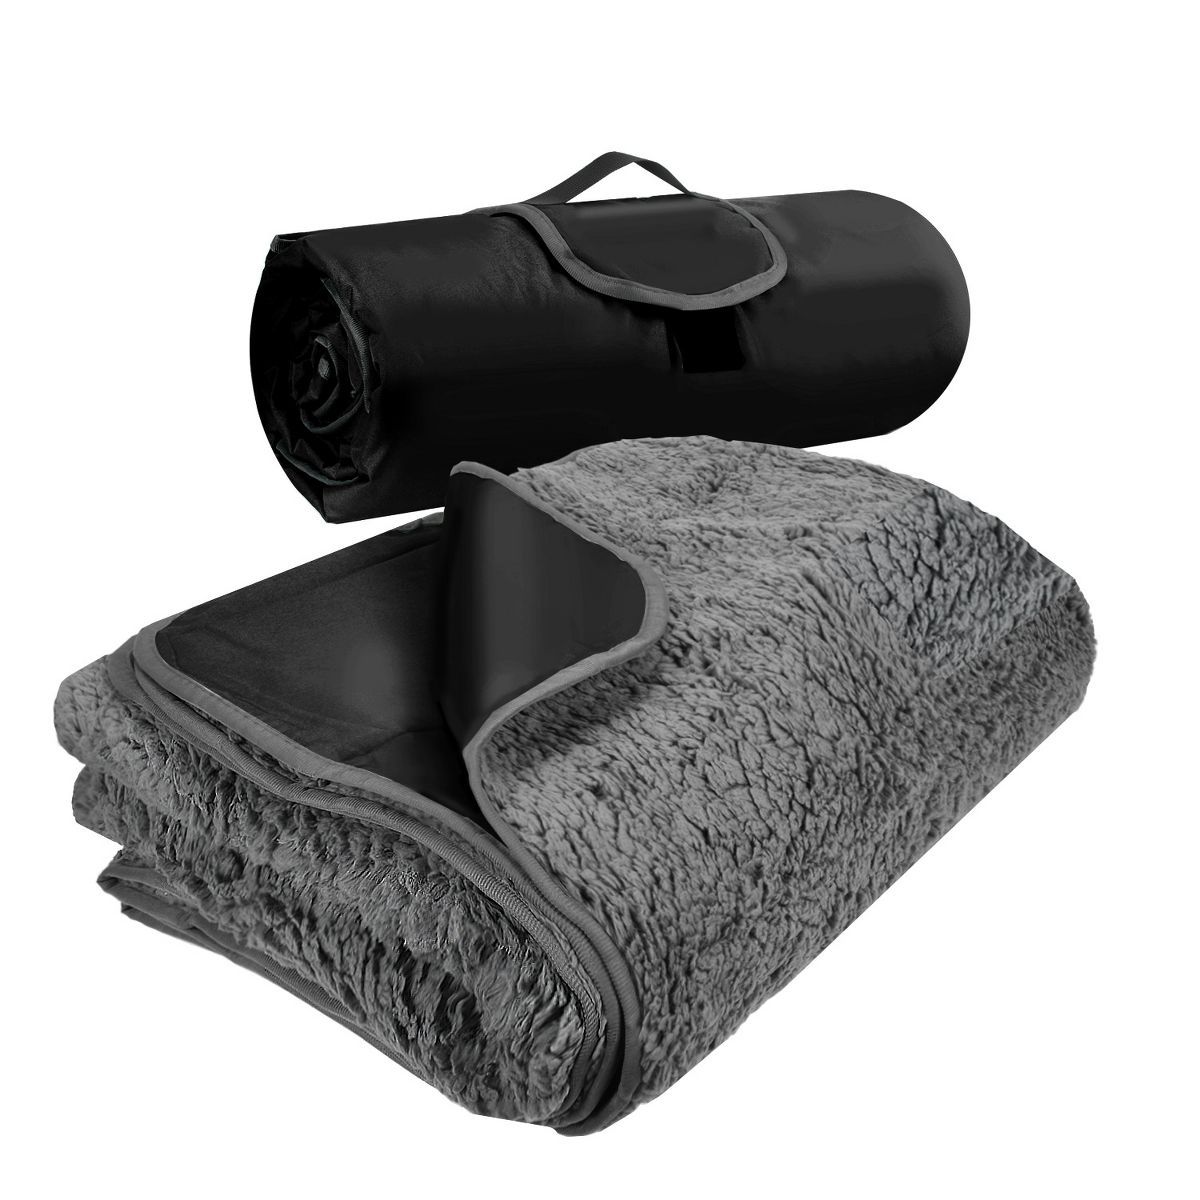 Tirrinia Outdoors Waterproof Throw Blanket, 51"x 59" Fleece Stadium Windproof Mat for Traveling, ... | Target